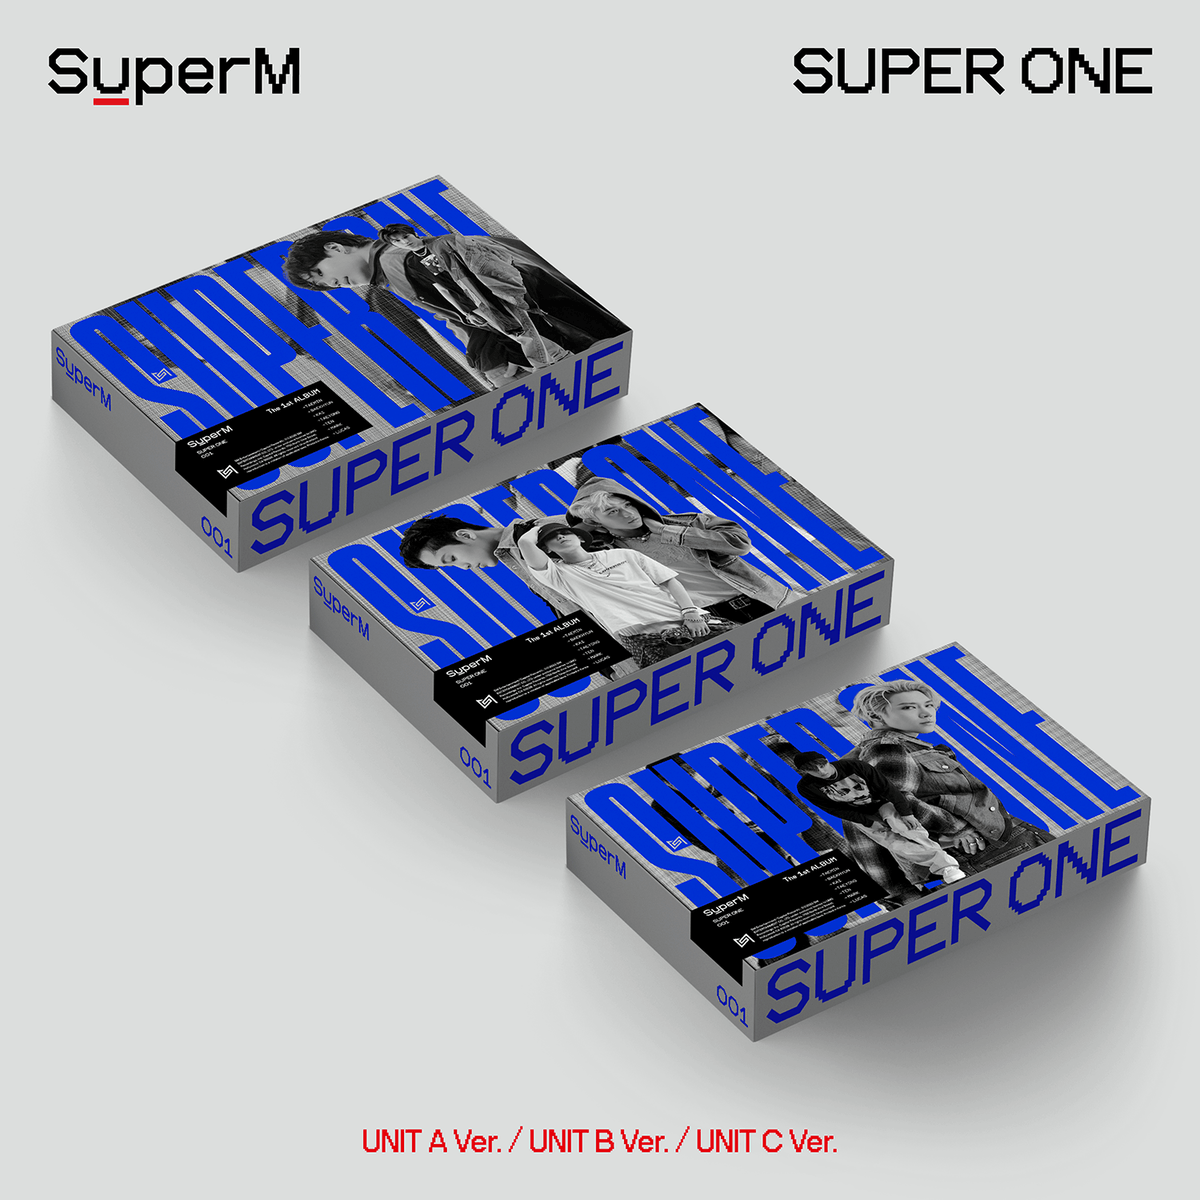 SuperM -  The 1st Album -  Super One (Random) (US ver.)